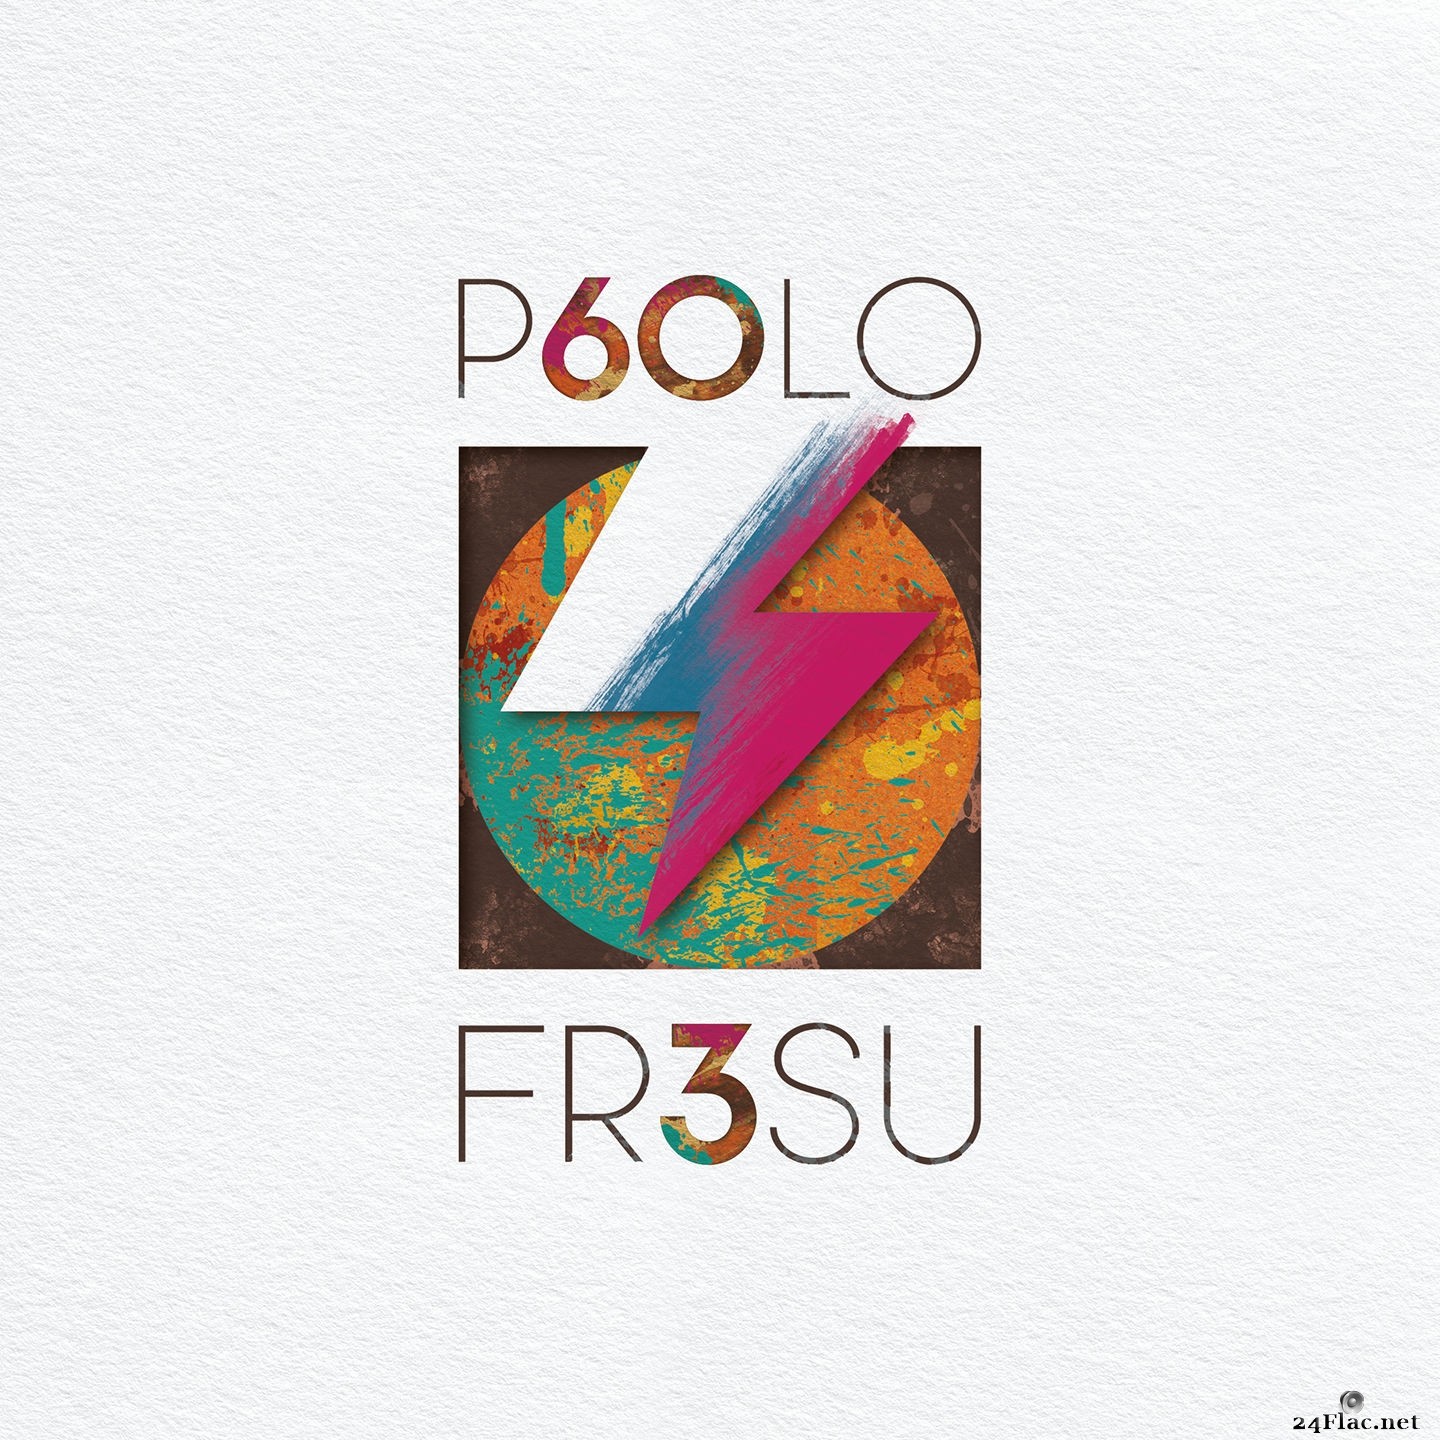 Paolo Fresu - P60LO FR3SU (2021) Hi-Res